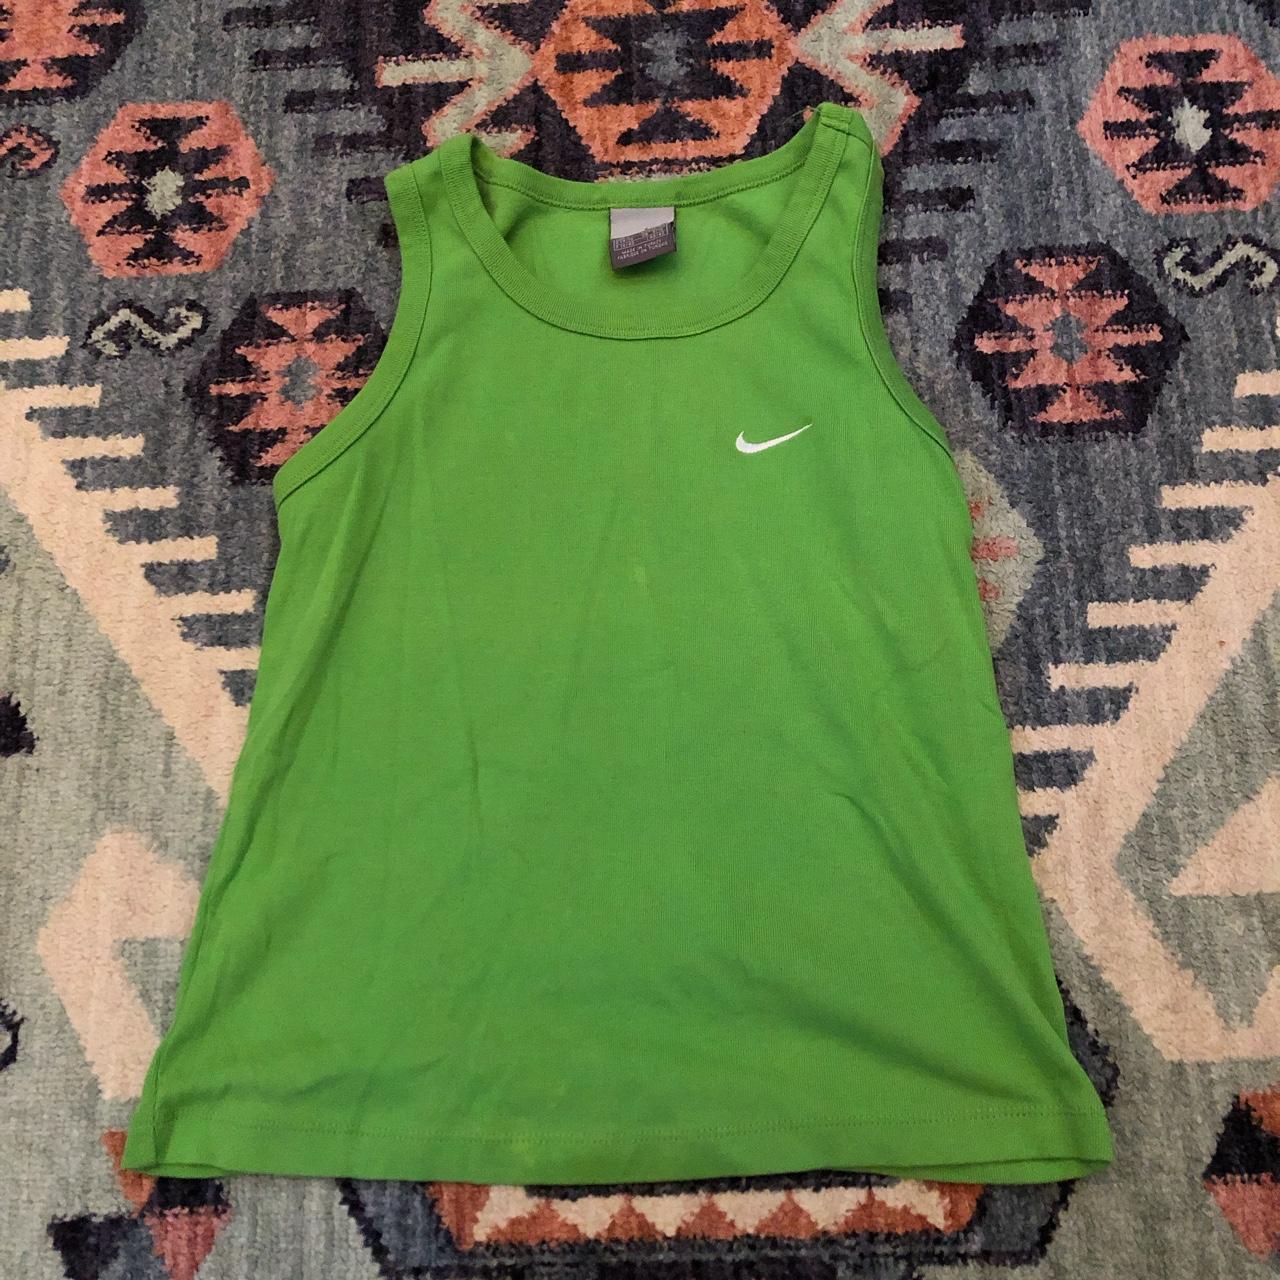 Lime green vintage Nike vest Summer tank top... - Depop